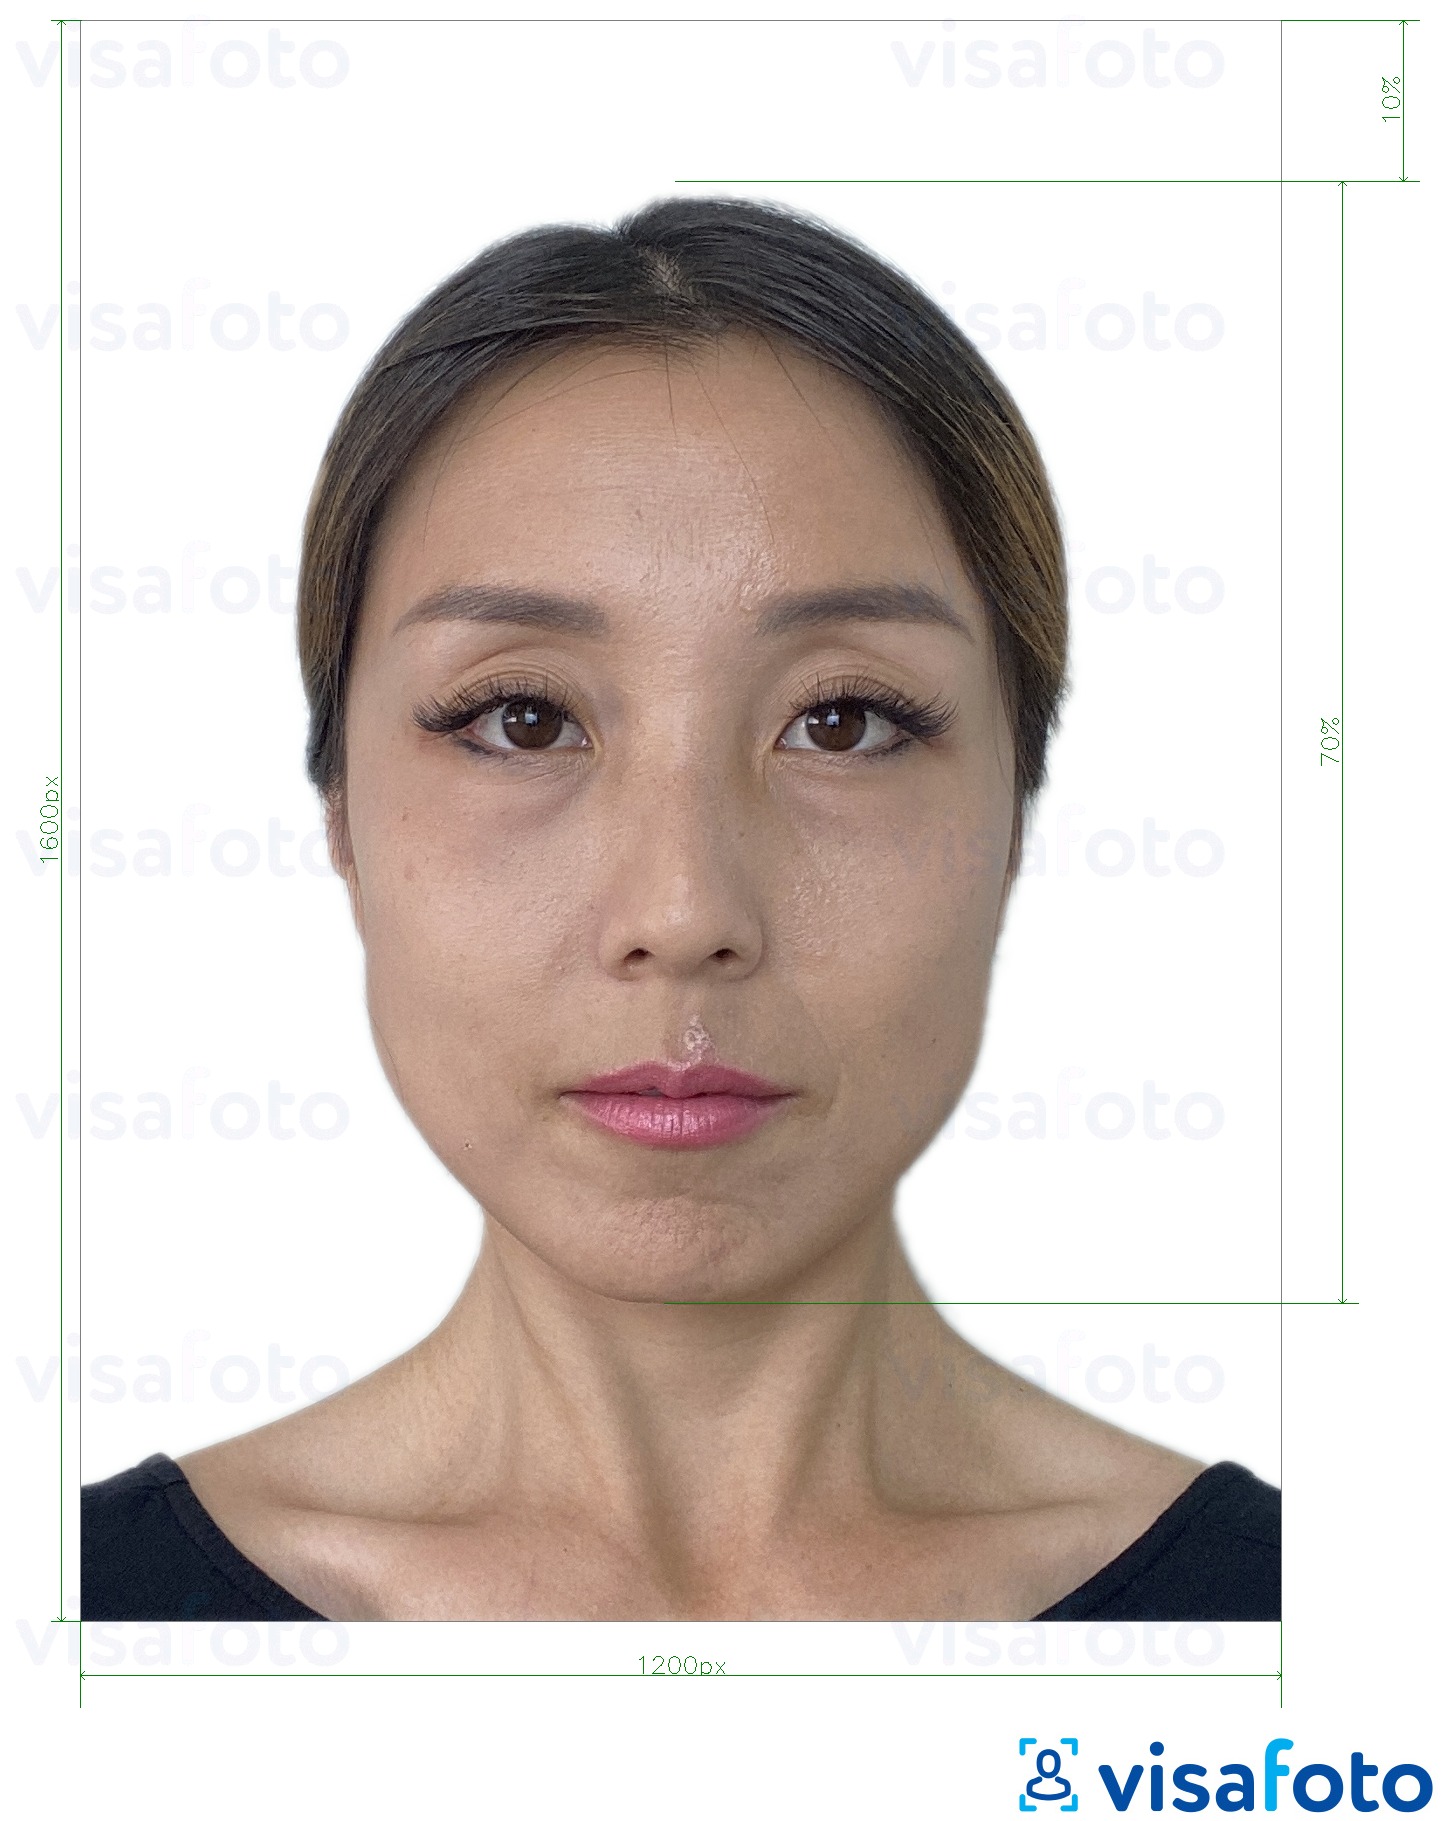  Hongkongi e-viisa e-viisa 1200x1600 pikslit fotonäidis koos täpse infoga mõõtude kohta.